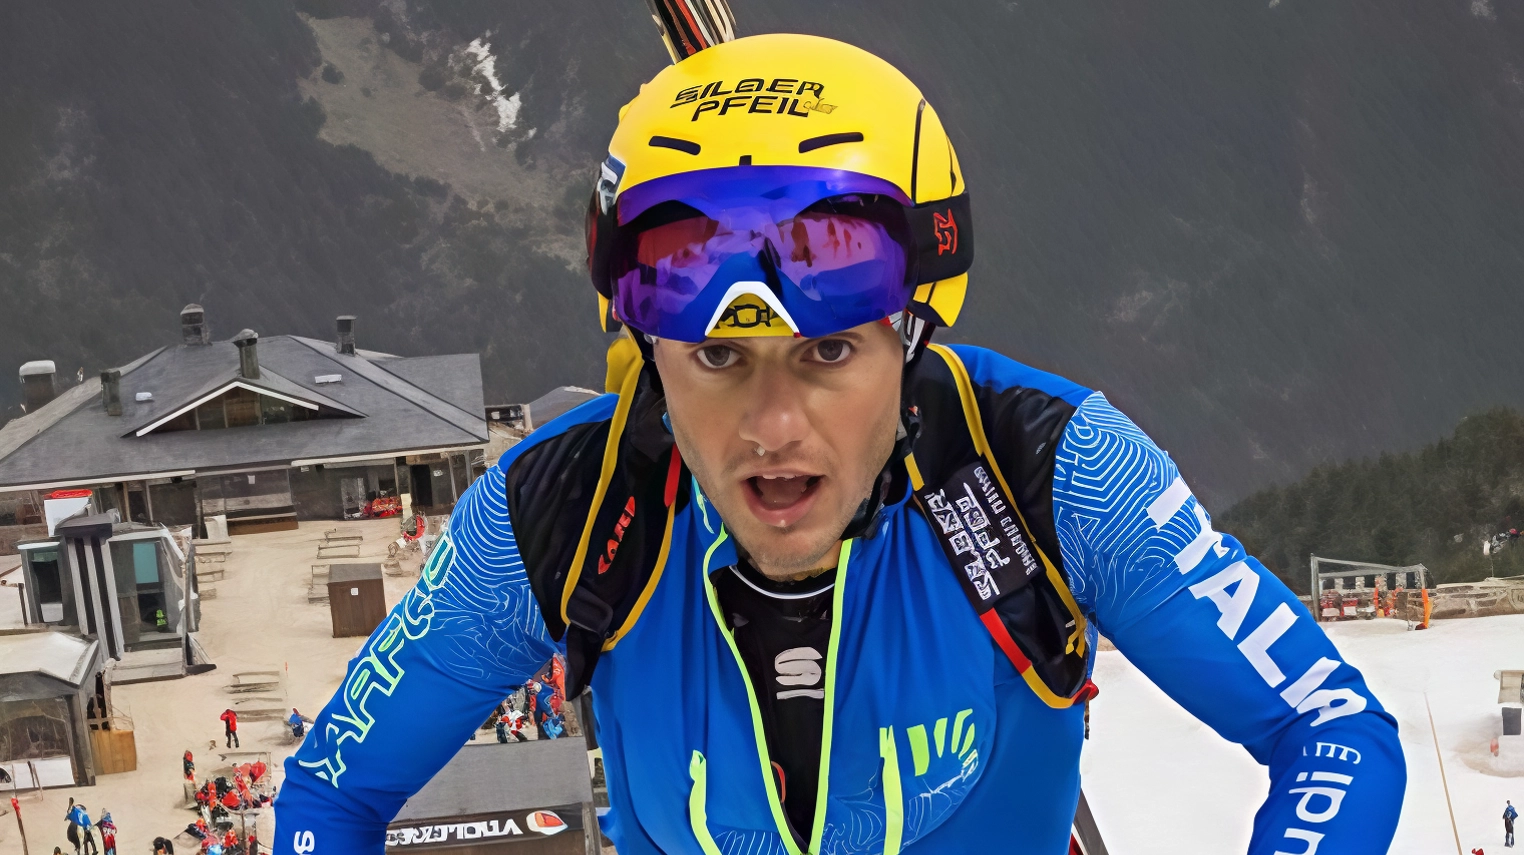 Tre lombardi di alto livello partecipano alla "Patrouille des Glaciers" in Svizzera, ultima tappa dei Mondiali Lunghe Distanze di sci alpinismo. Avverse condizioni meteorologiche minacciano lo svolgimento della gara.